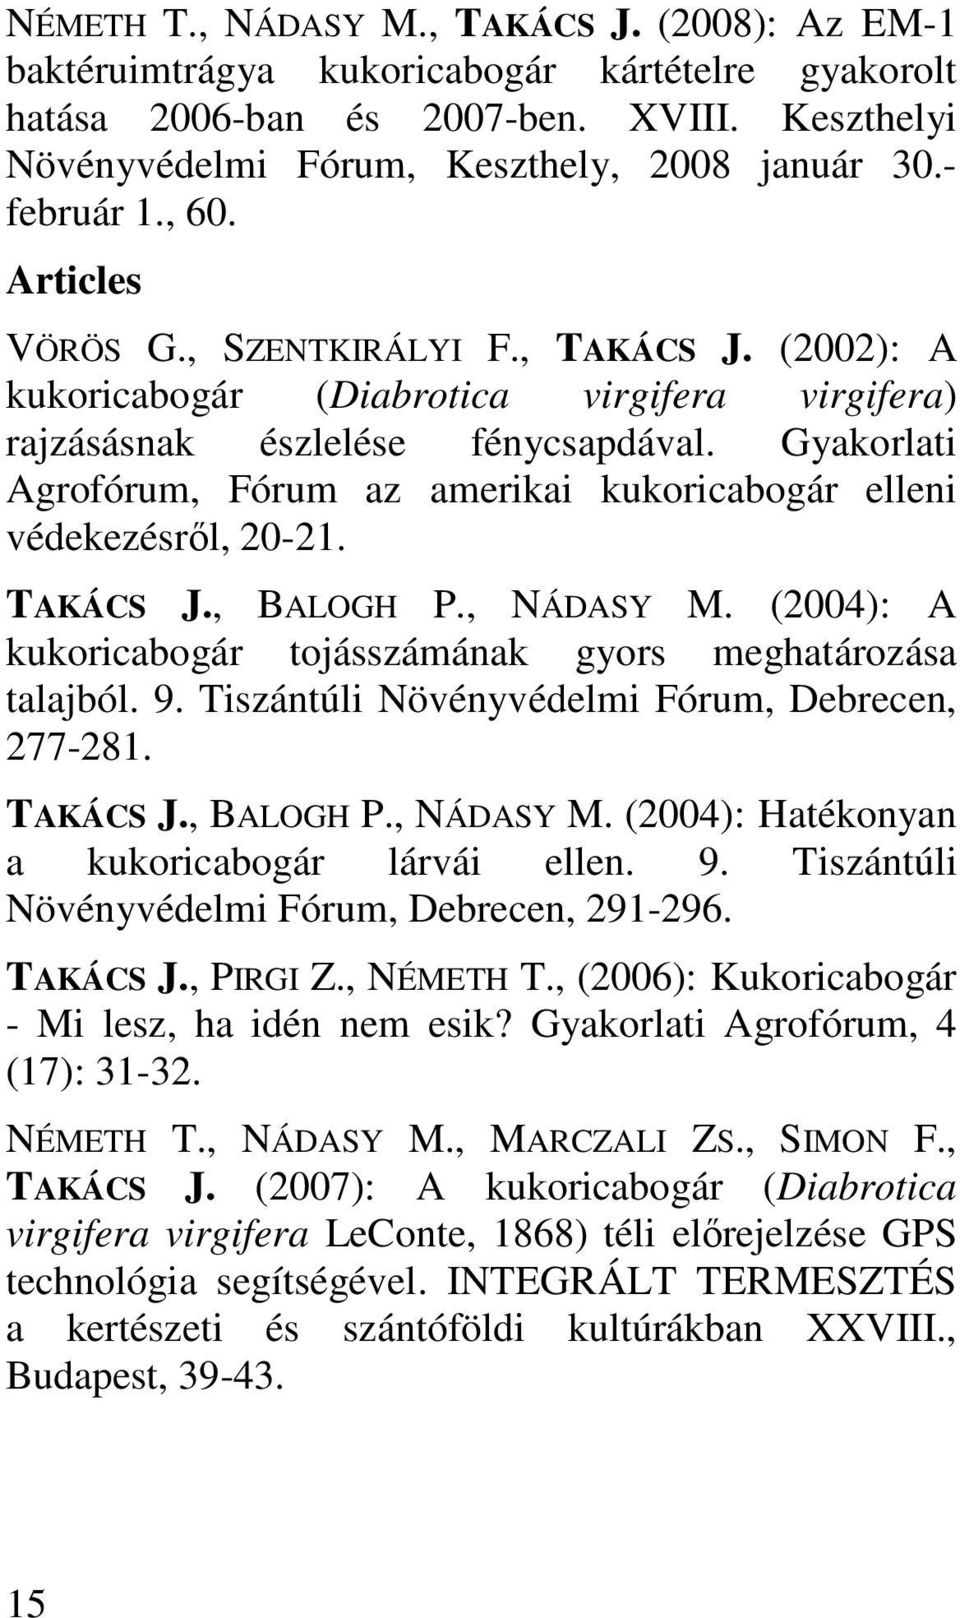 Gyakorlati Agrofórum, Fórum az amerikai kukoricabogár elleni védekezésről, 20-21. TAKÁCS J., BALOGH P., NÁDASY M. (2004): A kukoricabogár tojásszámának gyors meghatározása talajból. 9.